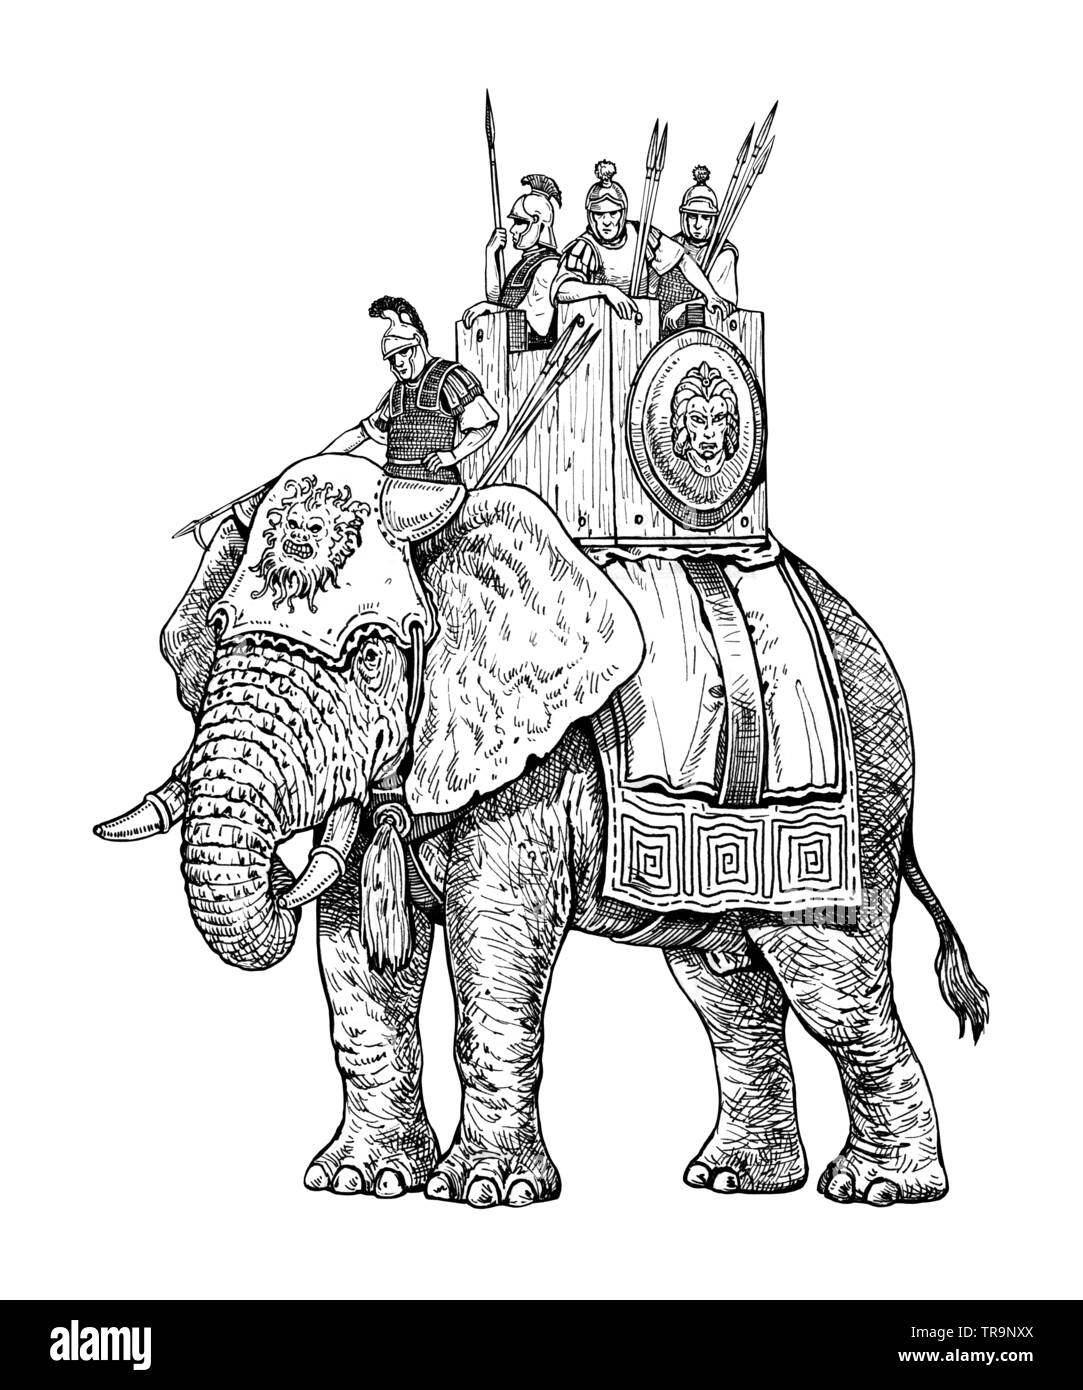 Kriegselefant Illustration, Armee von Karthago. Historische Zeichnung. Stockfoto